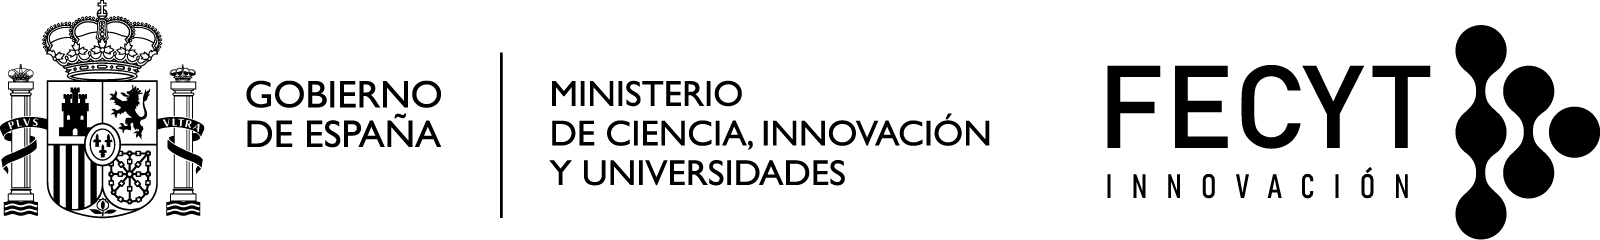 Logotipo Gobierno de España/Ministerio/FECYT blanco y negro